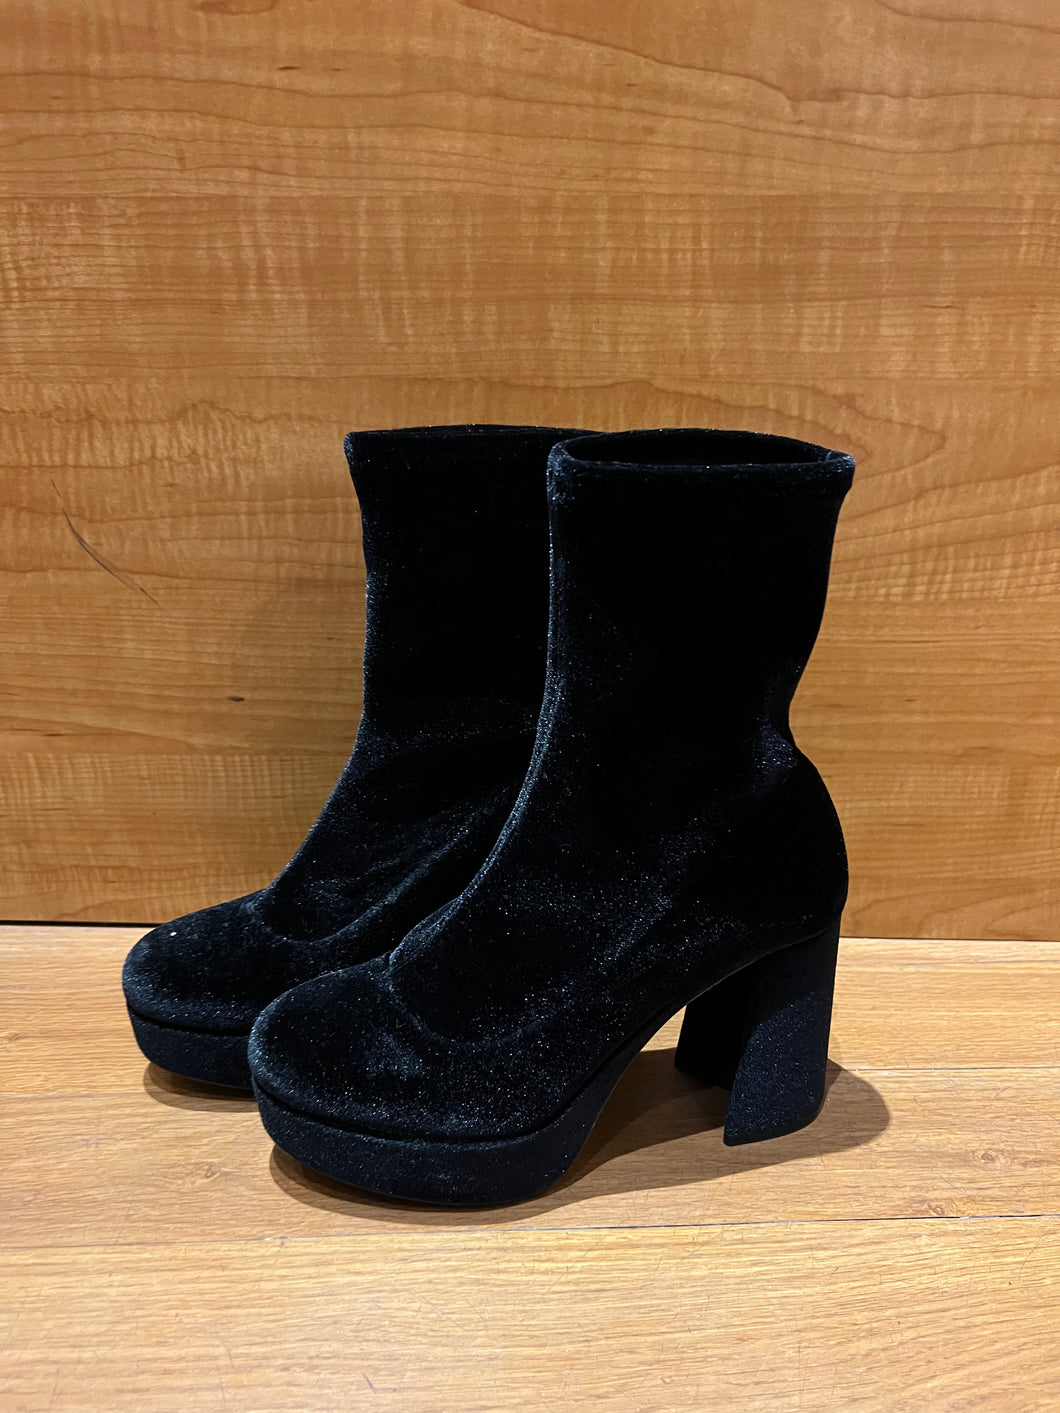 Miu Miu Boots Size 4.5